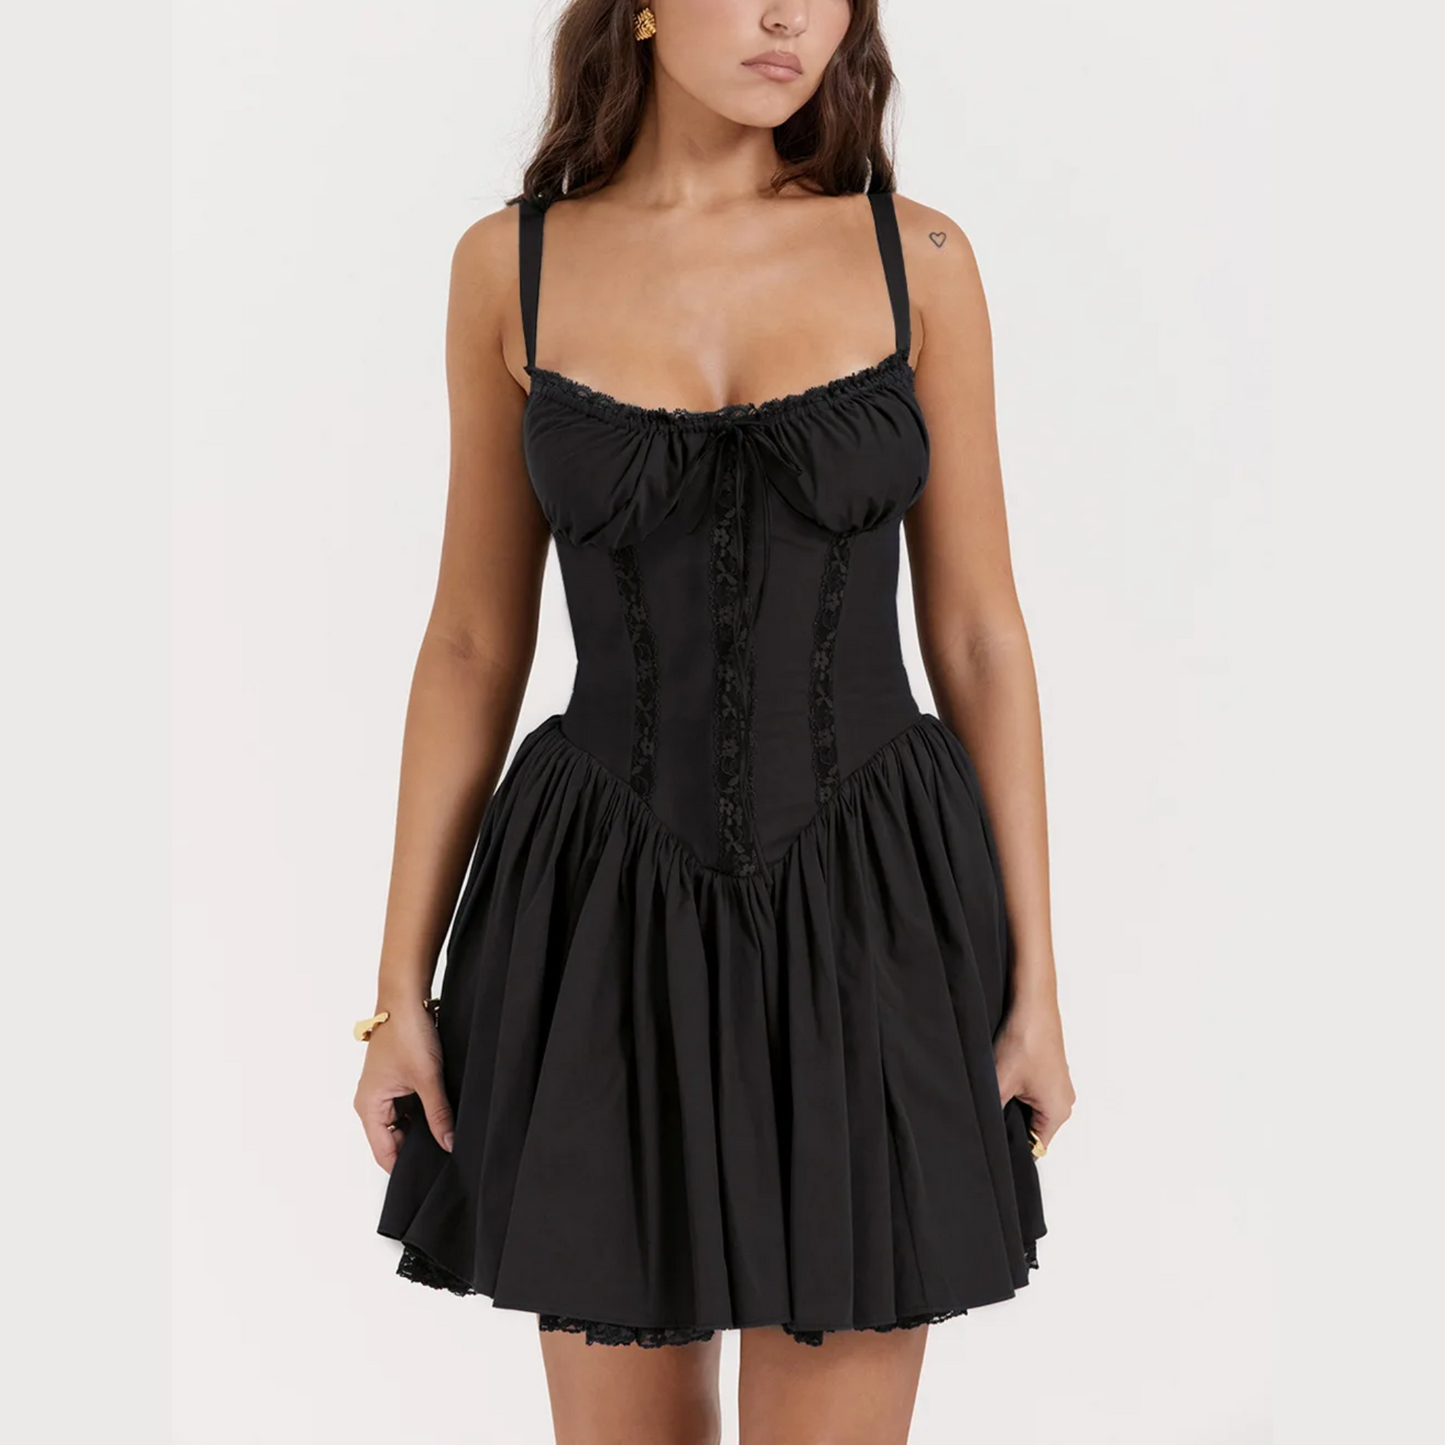 Sade - Black A-Line Lace Up Mini Dress